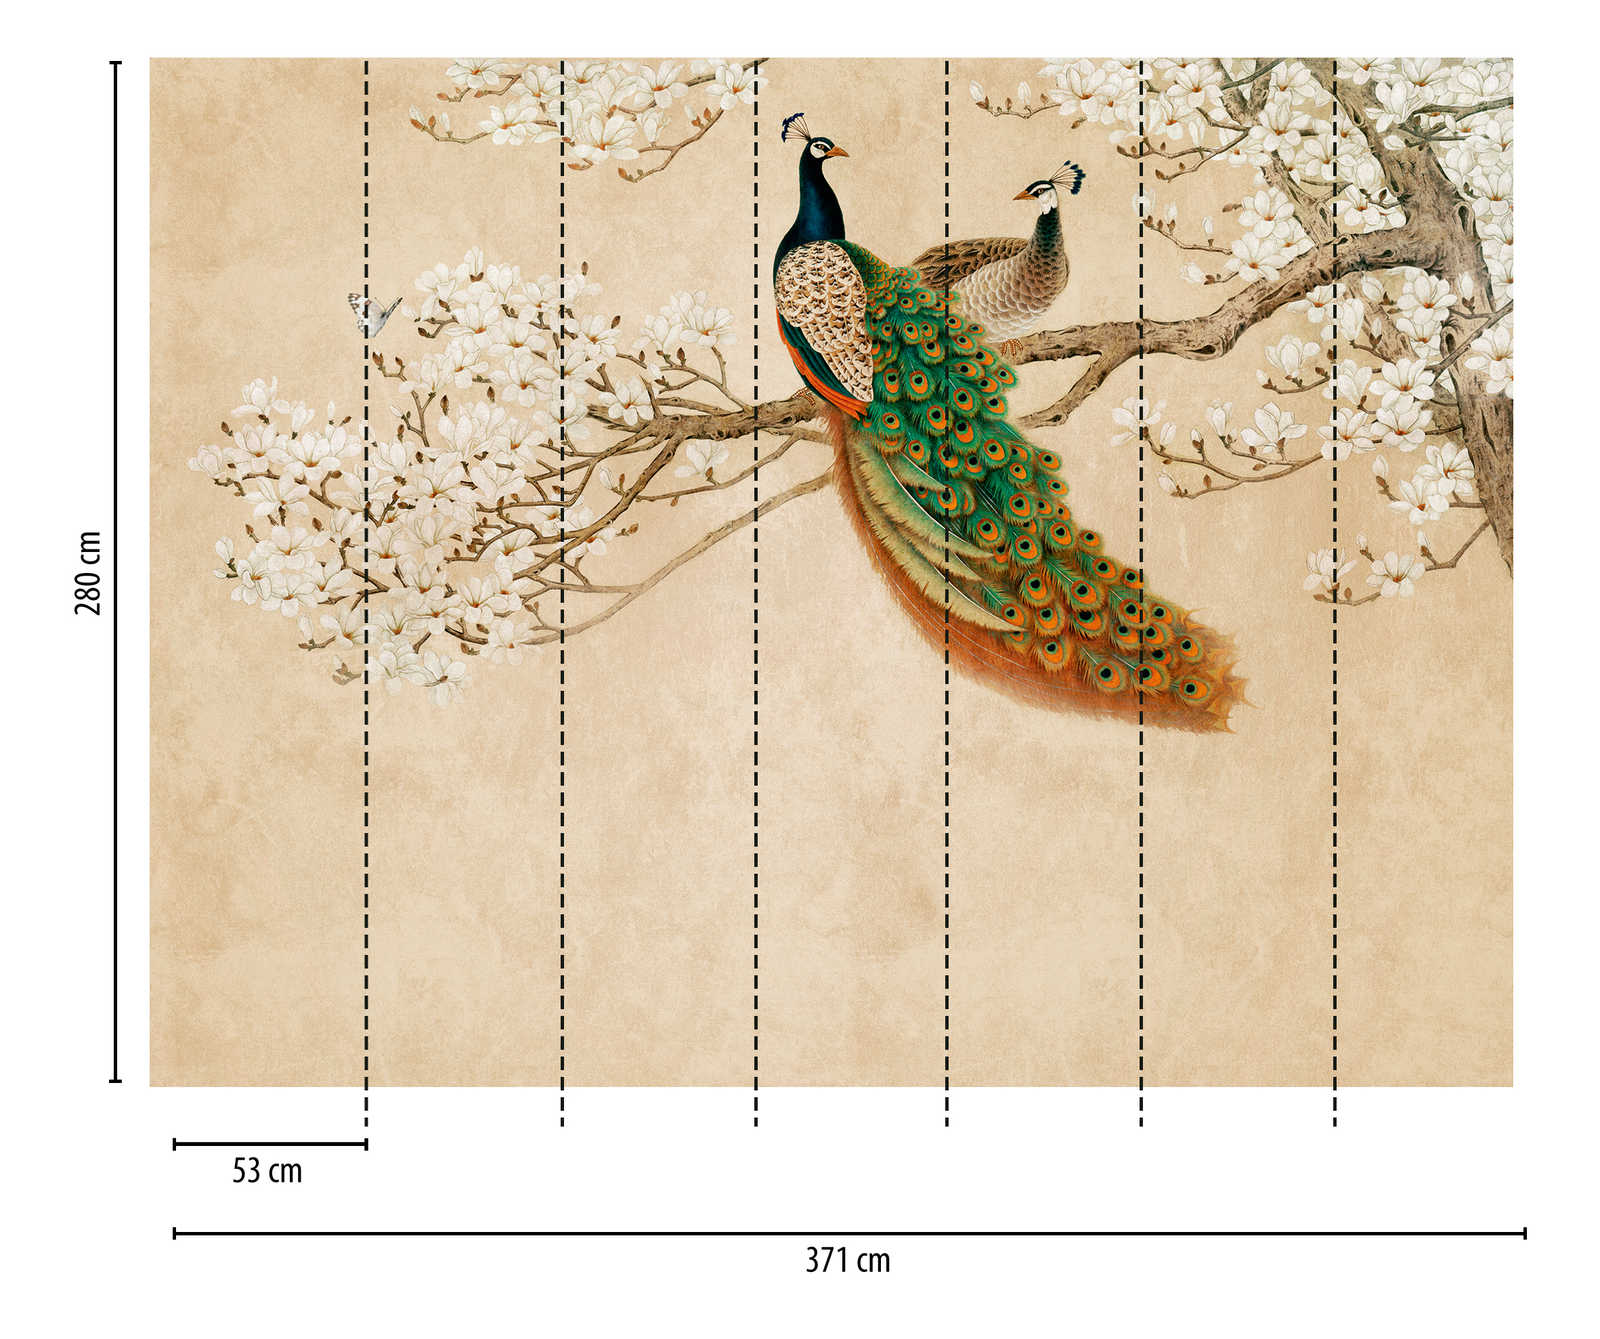             Nouveauté papier peint - papier peint à motifs Fleurs de cerisier & paon dans le style asiatique
        